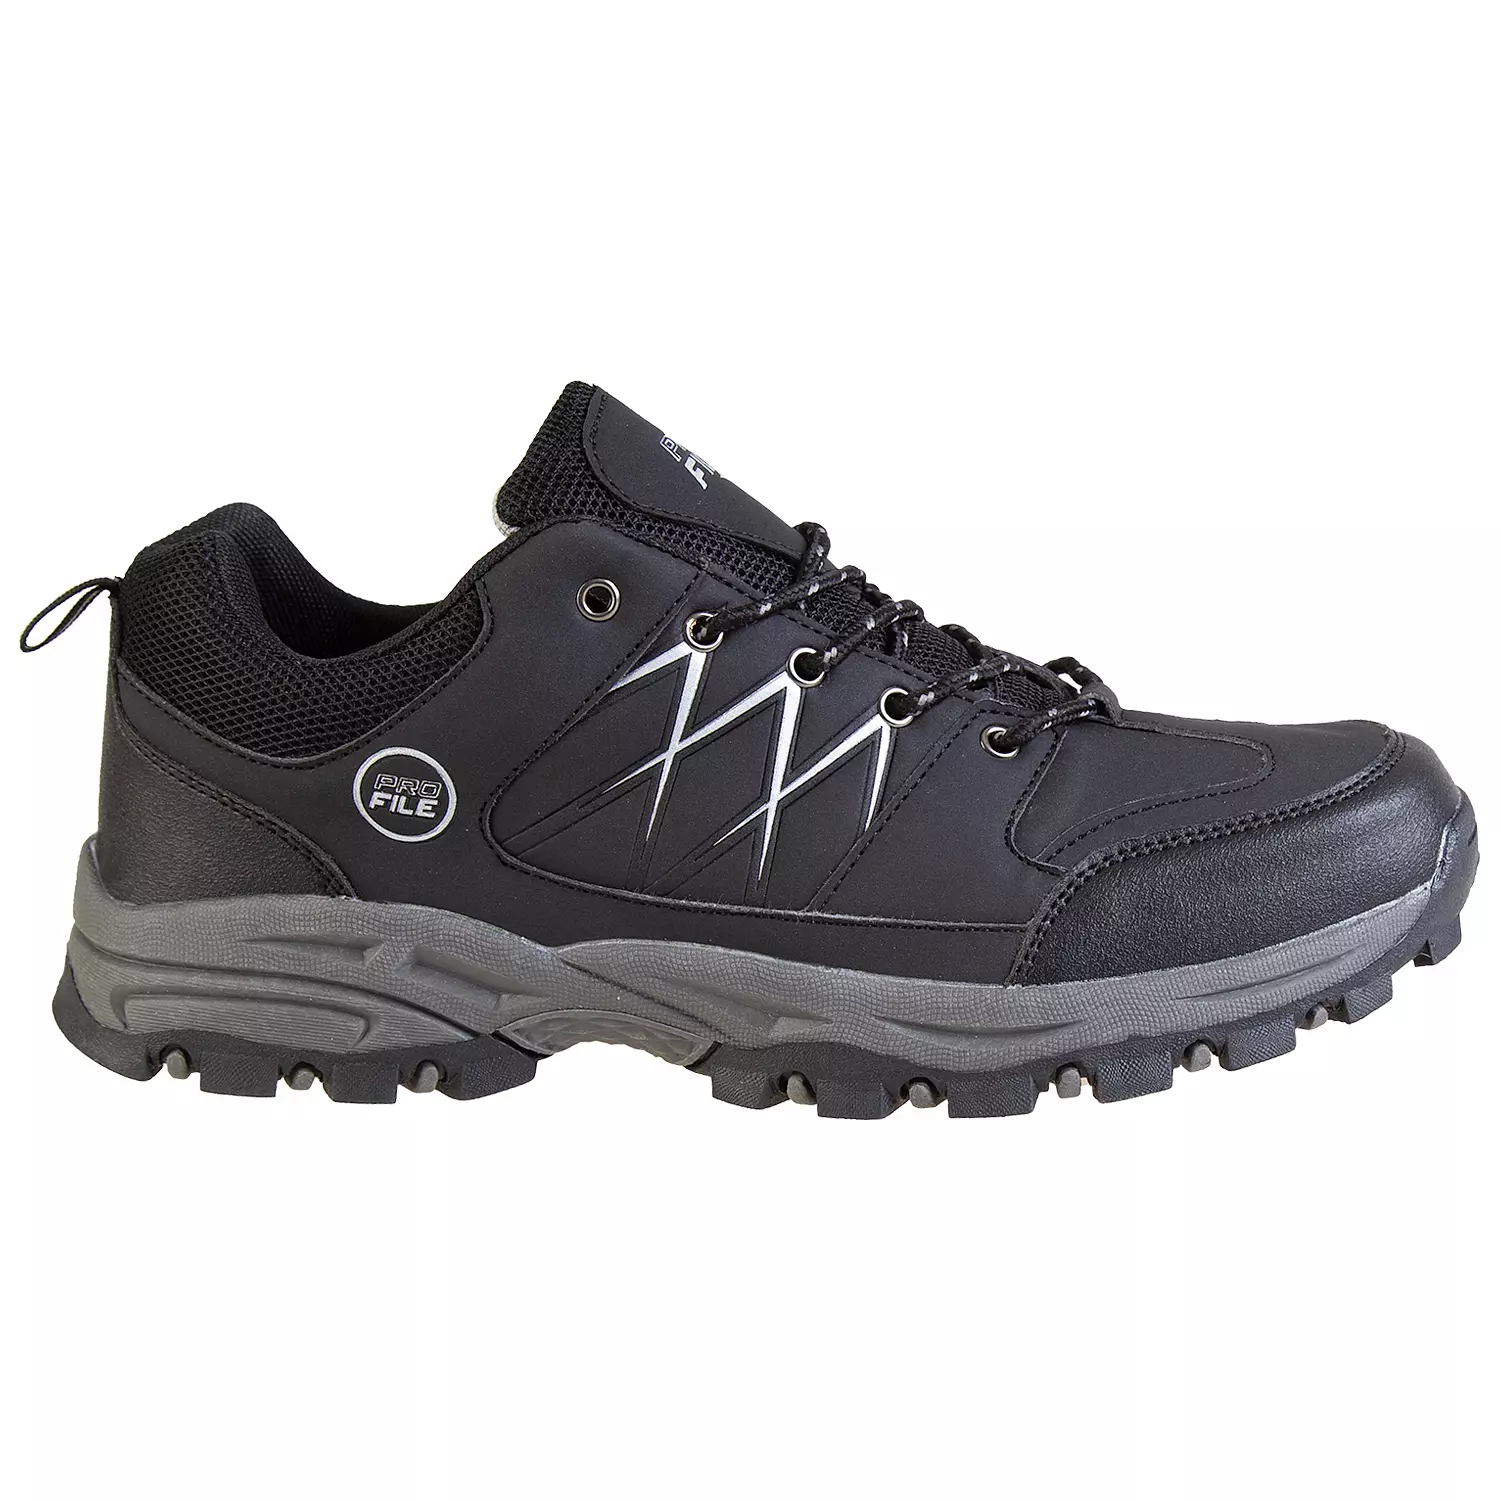 Chaussures de randonnée basses pour hommes avec bandes réfléchissantes, noir, taille 7